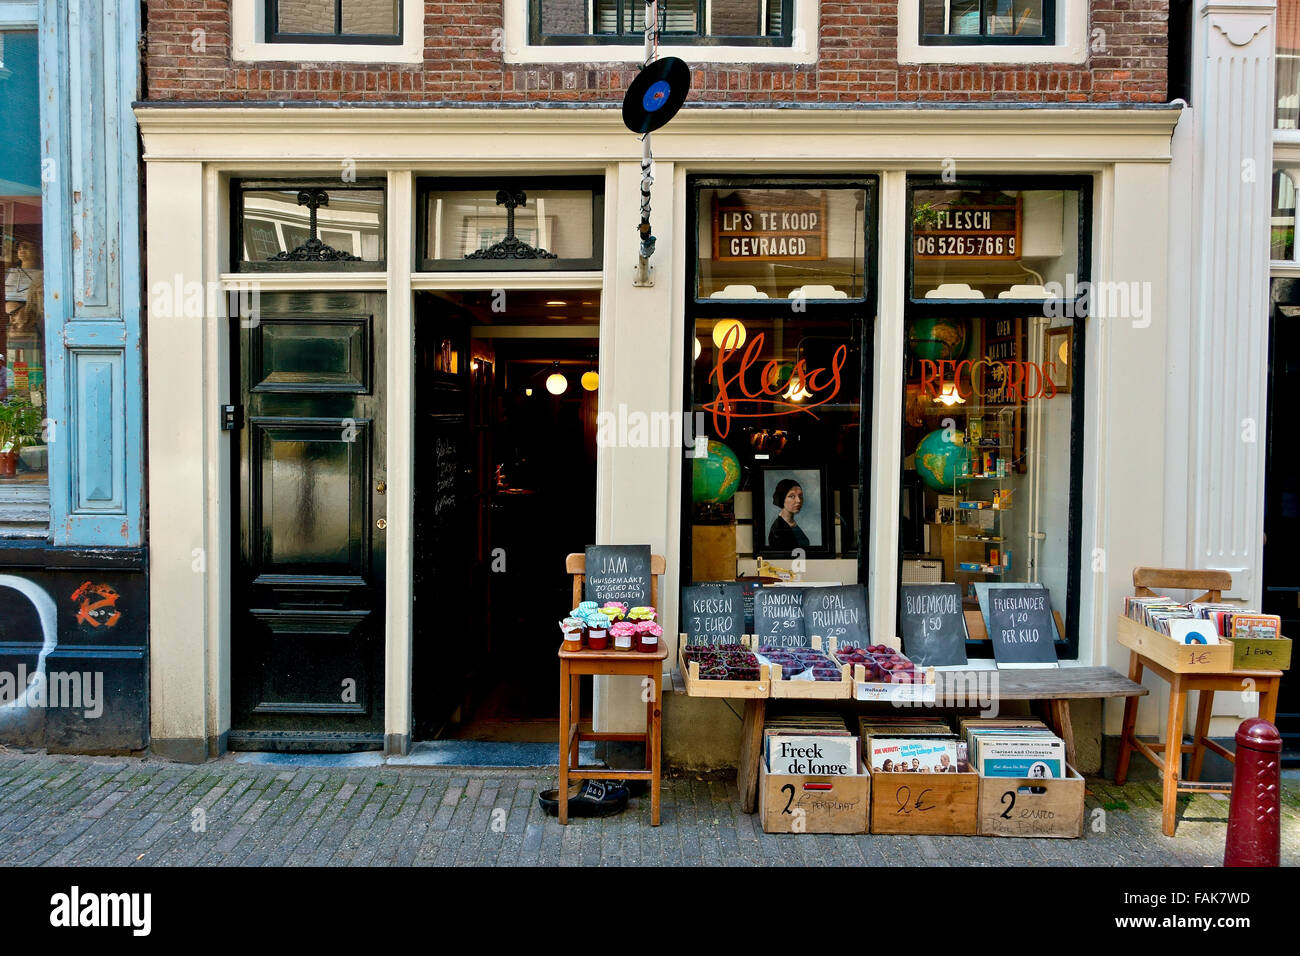 Shopping. Vintage record, negozio di marmellate e frutta, esterni, negozio porta, Amsterdam centrale Olanda, Paesi Bassi, Europa, Unione europea, UE. Foto Stock